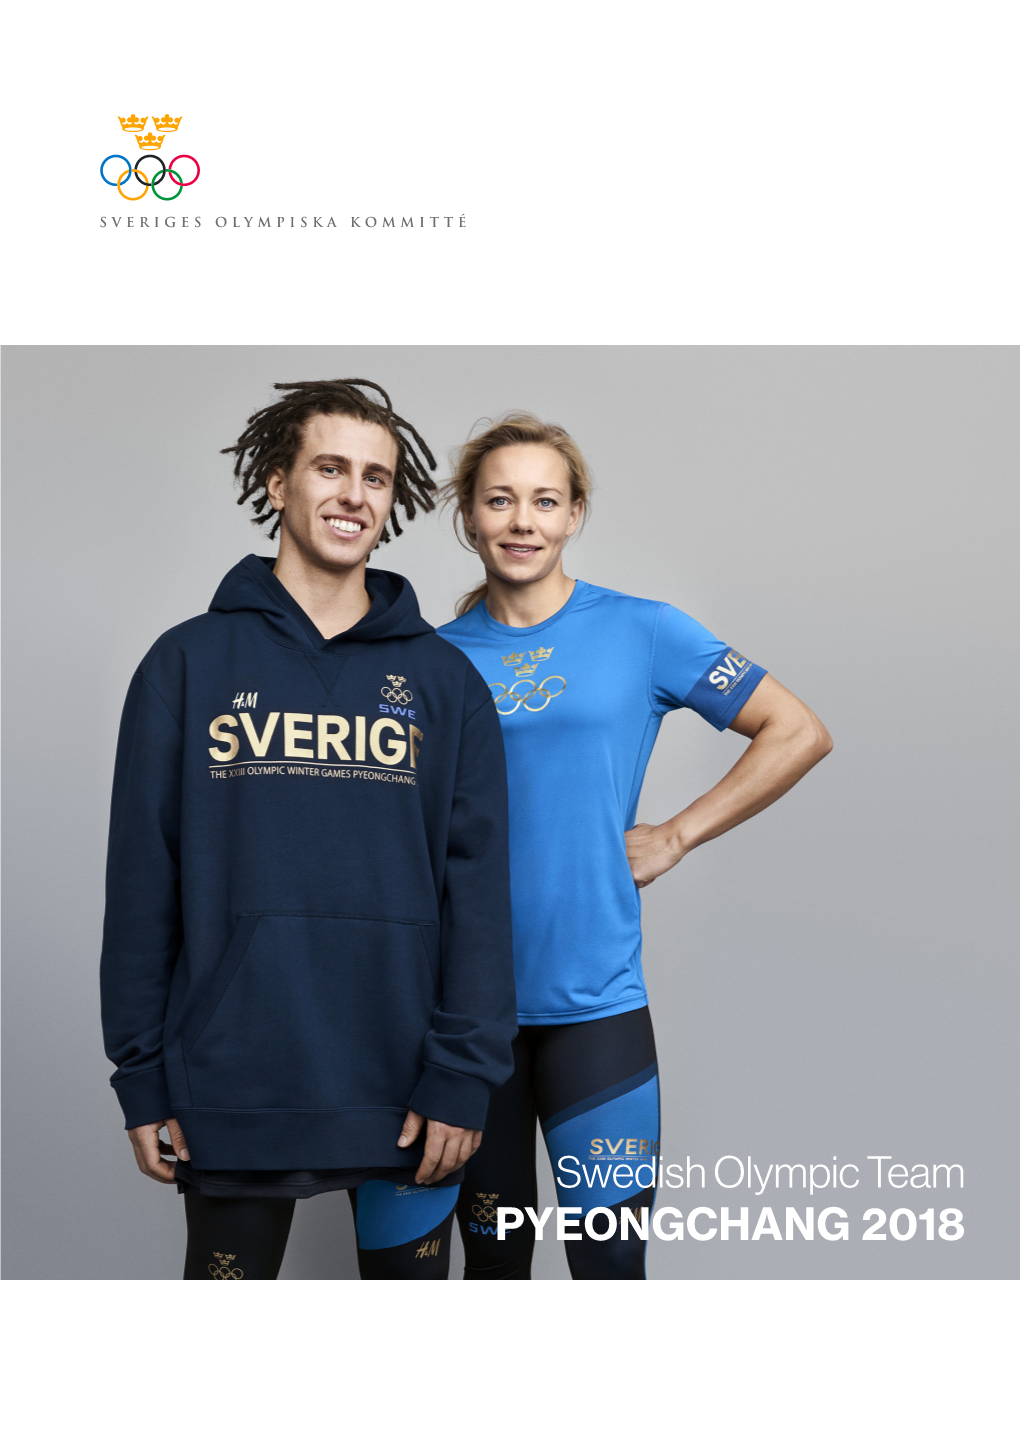 Swedish Olympic Team PYEONGCHANG 2018